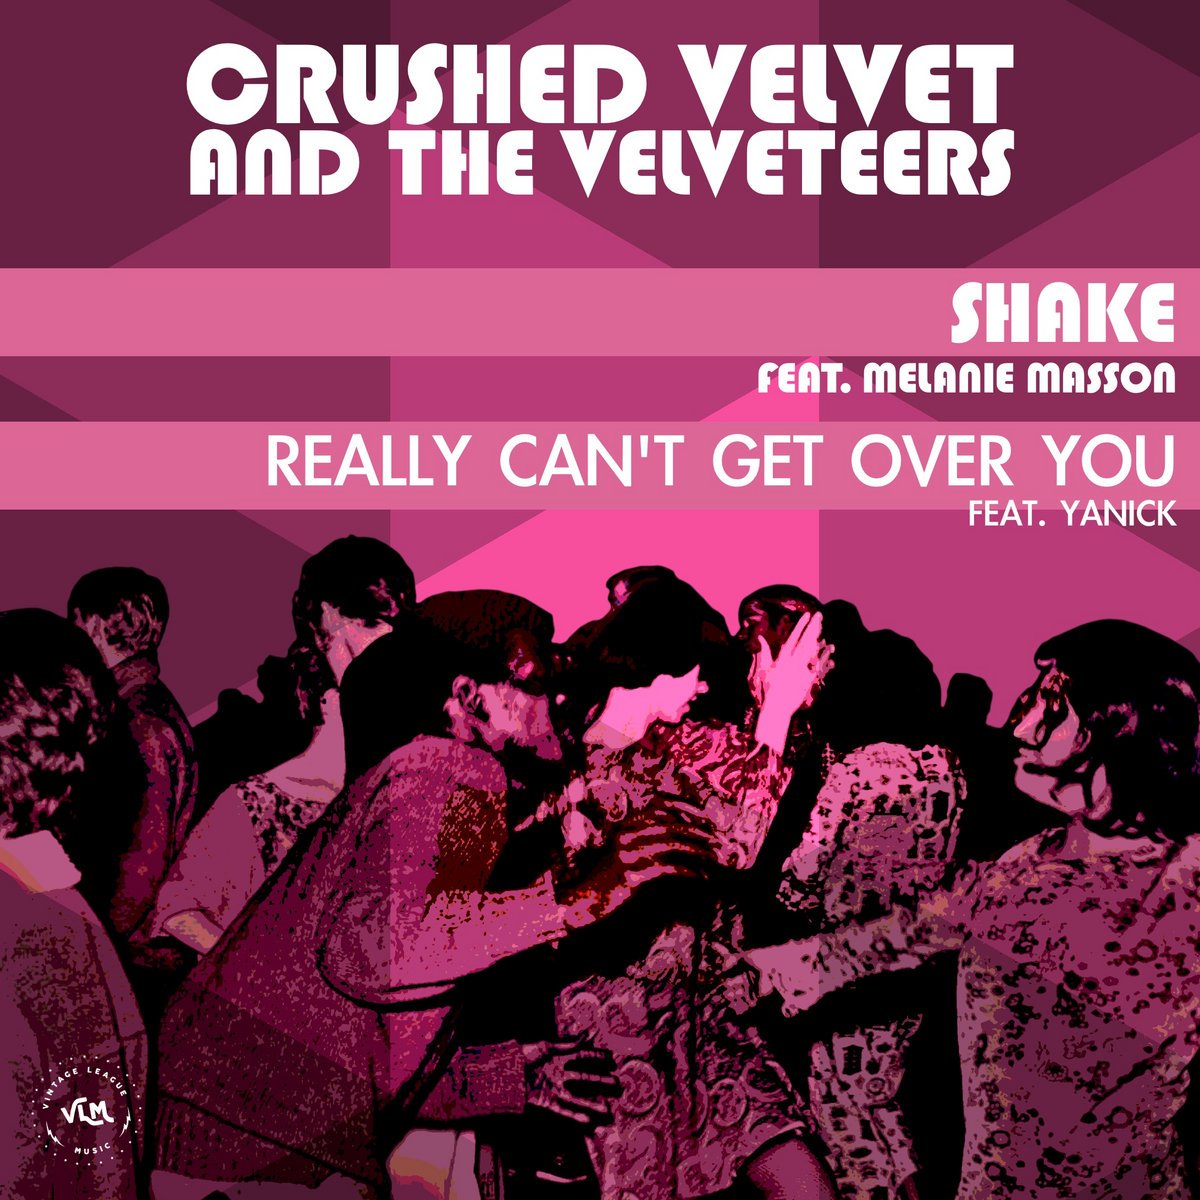 Crushed Velvet and the Velveteers feat. Melanie Masson Shake.jpeg